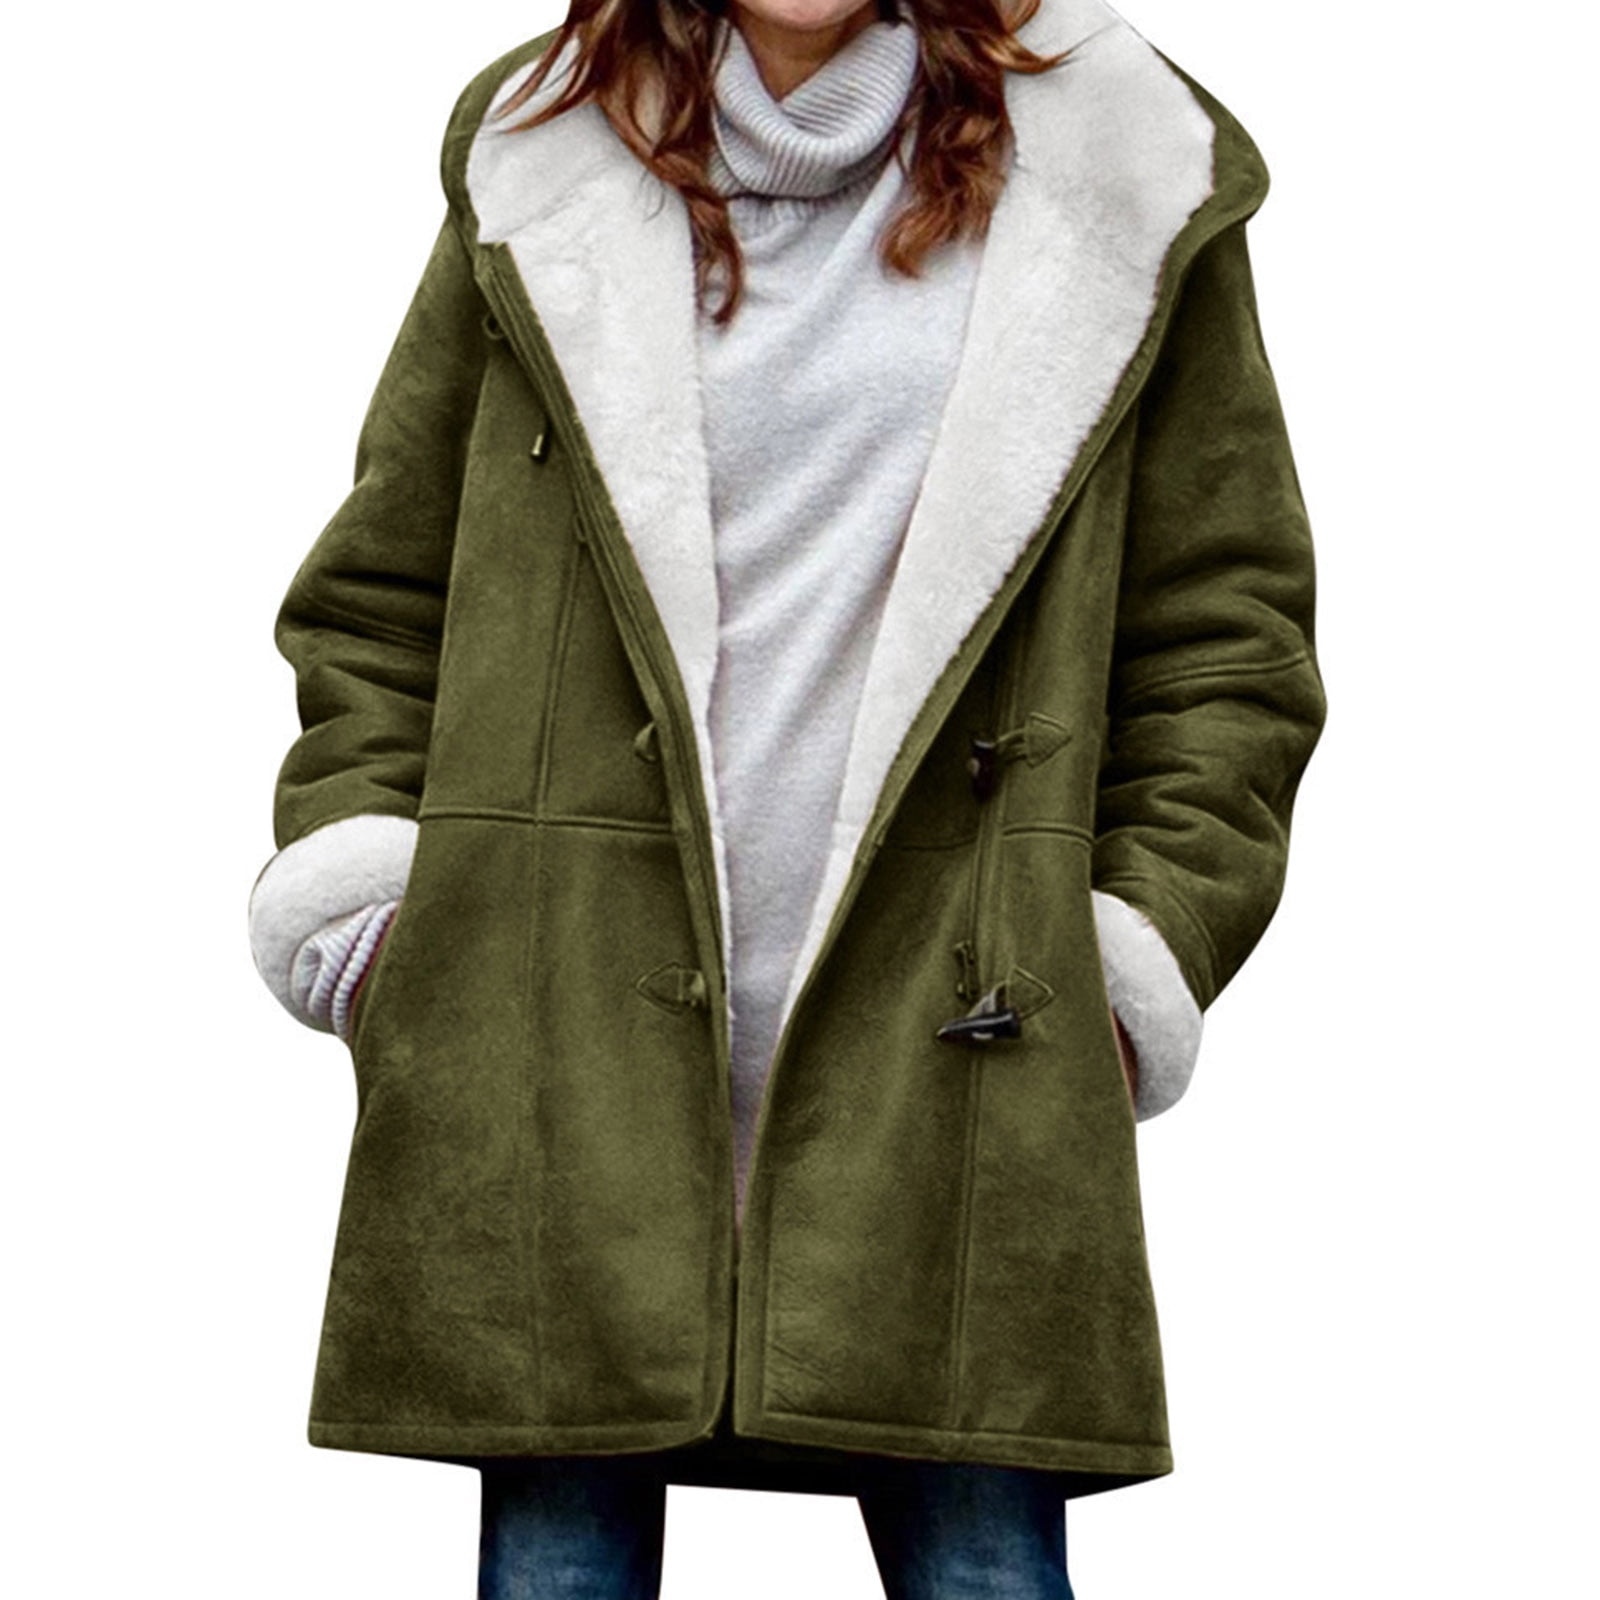 Women Parka Overcoat Long Jacket Outwear  Fashion Winter Warm Trench Coat